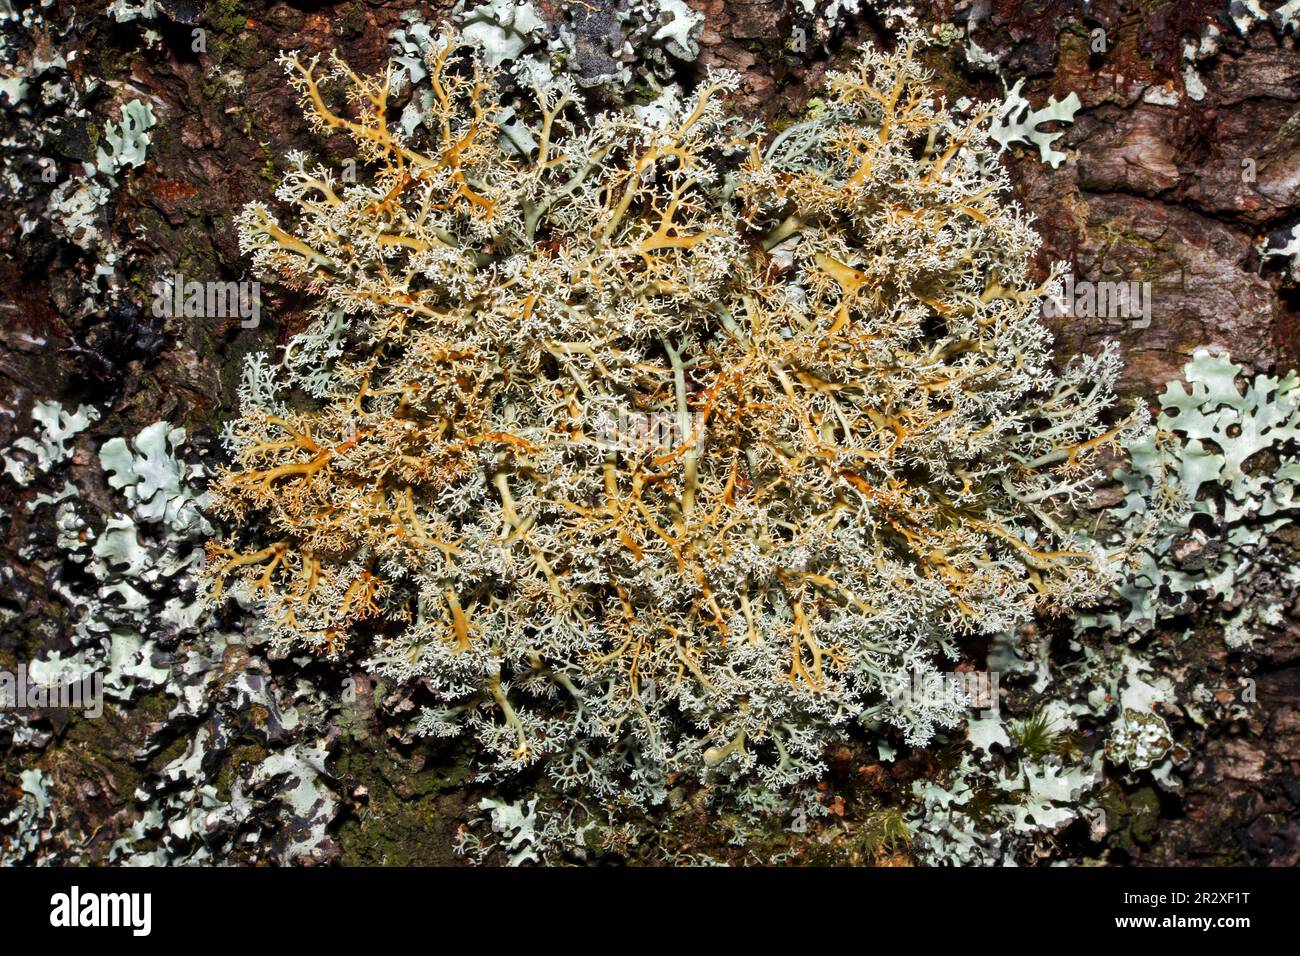 Sphaerophorus globosus ist ein Fructicoselichen, das auf mossigen, sauren Felsen und Bäumen in Berggebieten vorkommt. Es hat eine kosmopolitische Verteilung. Stockfoto